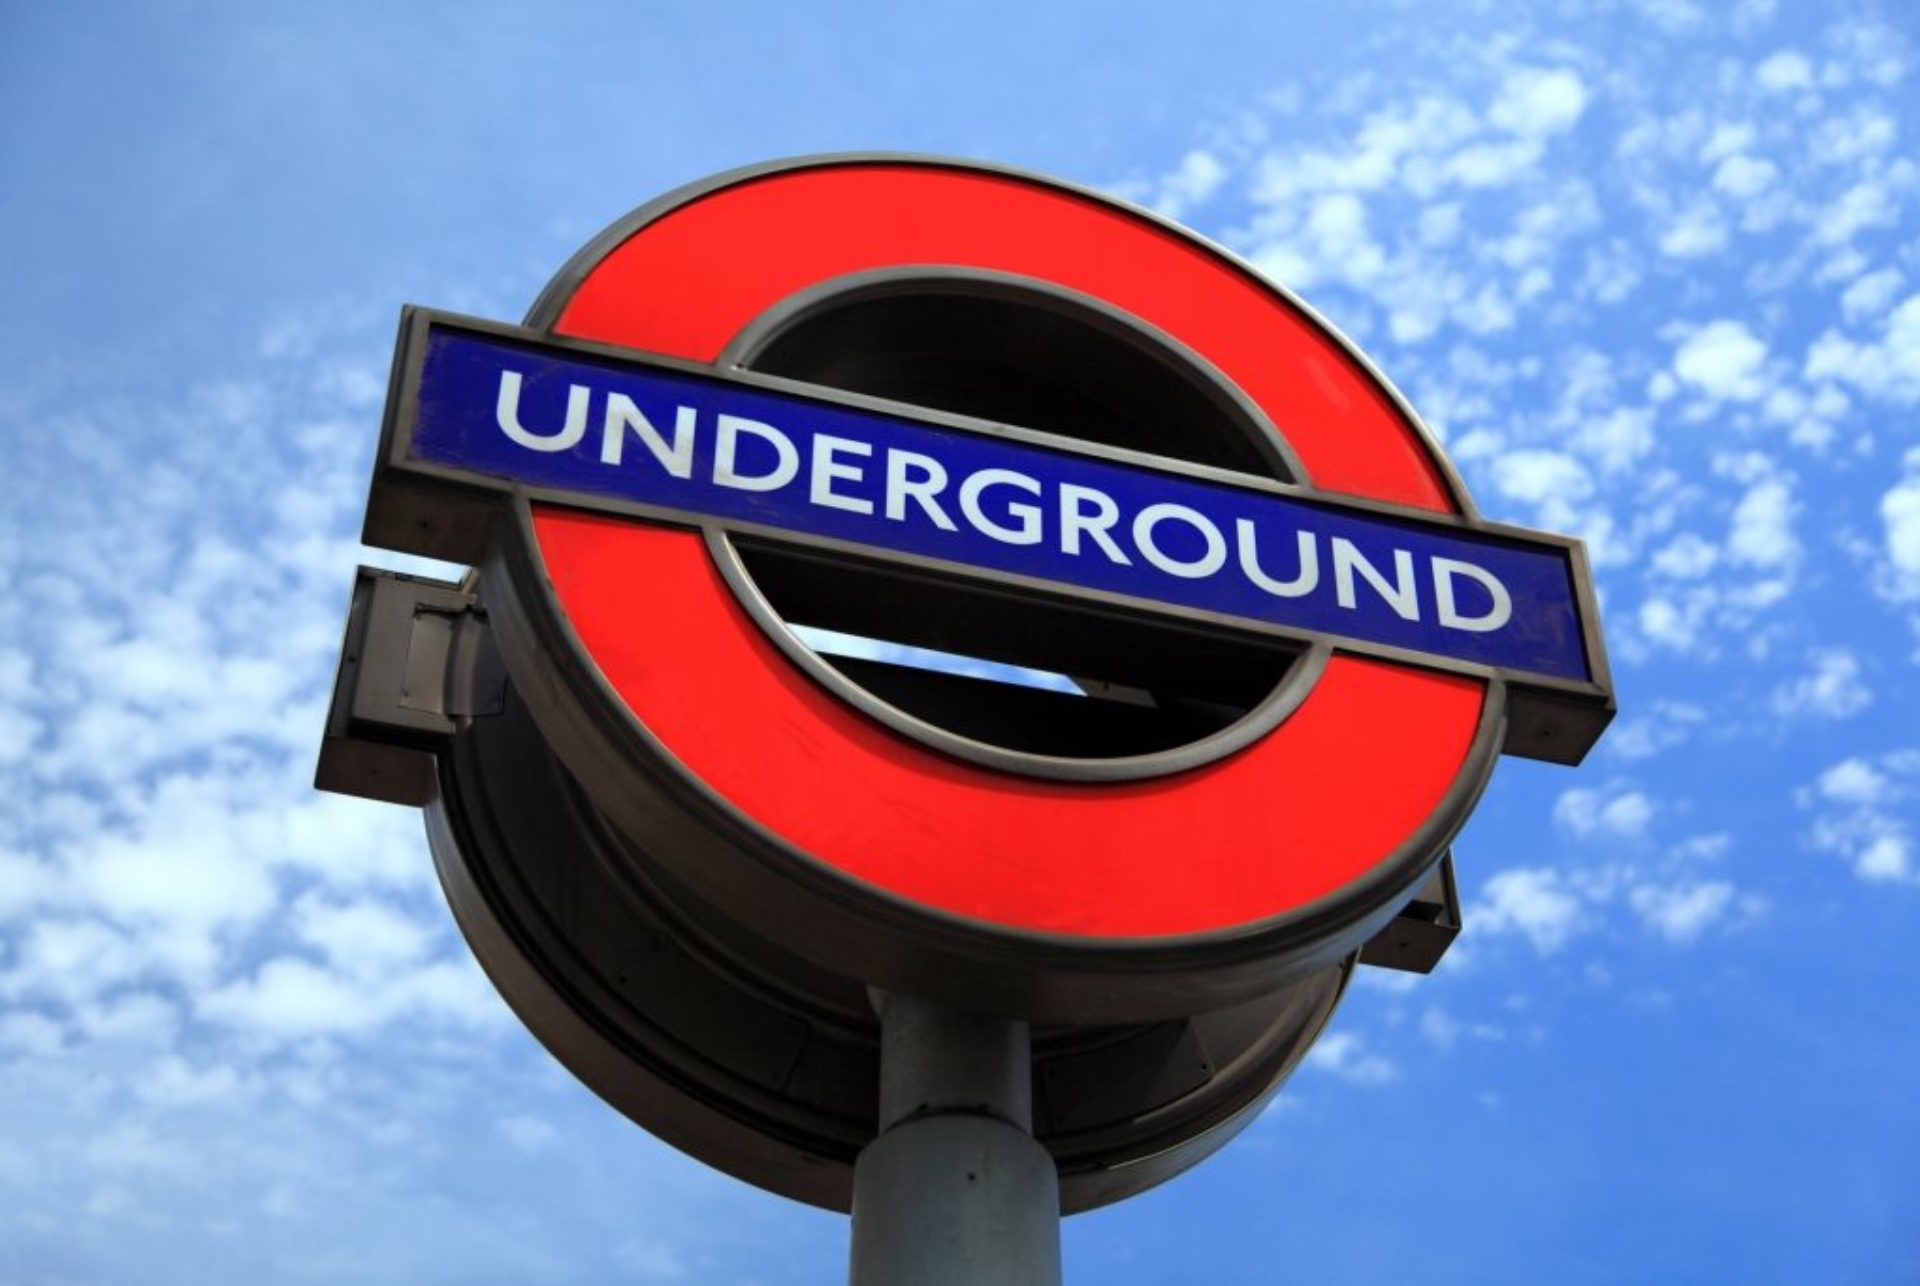 London underground sign.